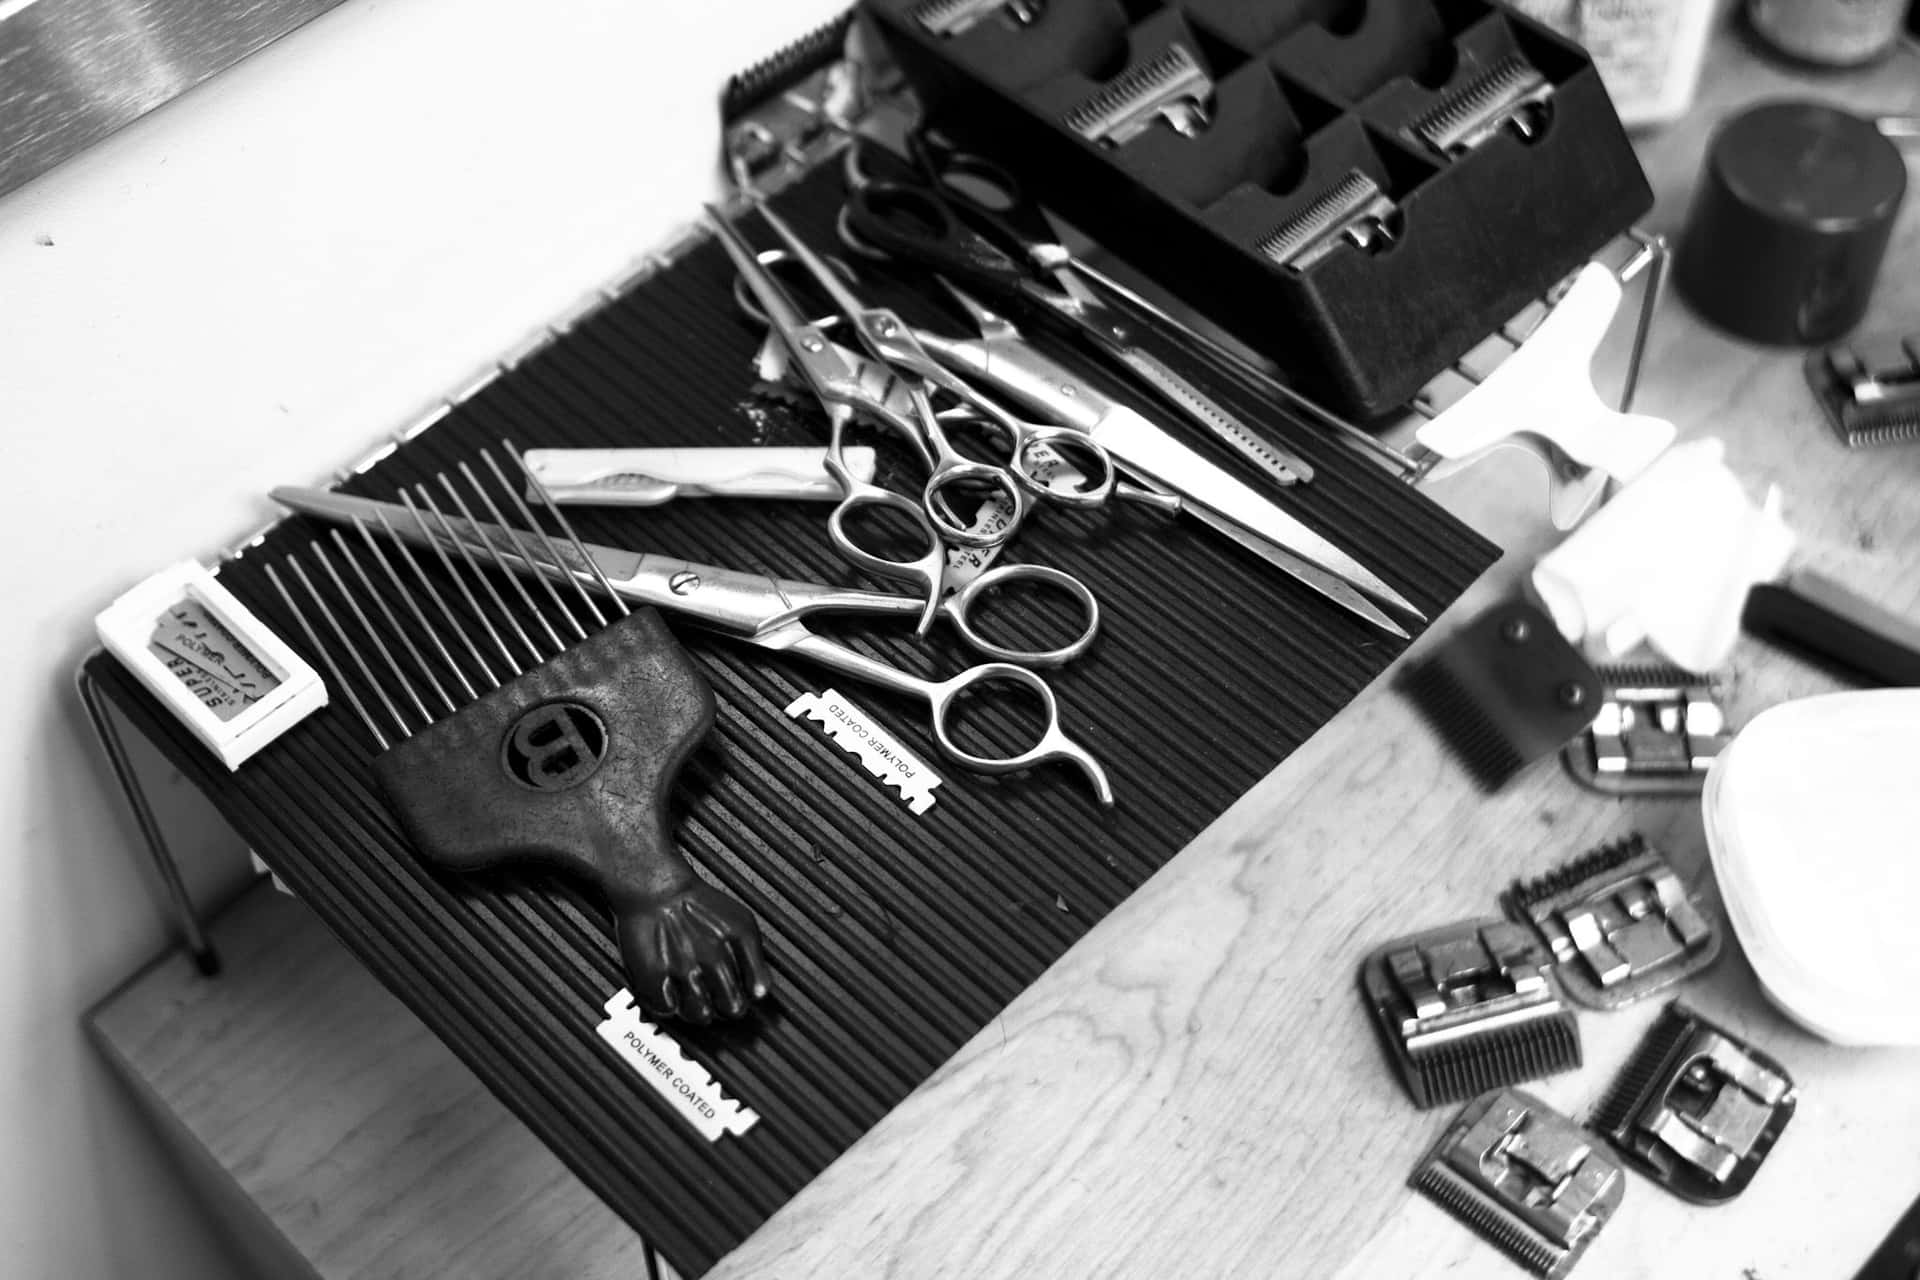 500+ #barbershop: Ảnh, Hình Nền, Background Đẹp Nhất Miễn Phí.Tải Về # barbershop Full HD Tại Zicxa Photos